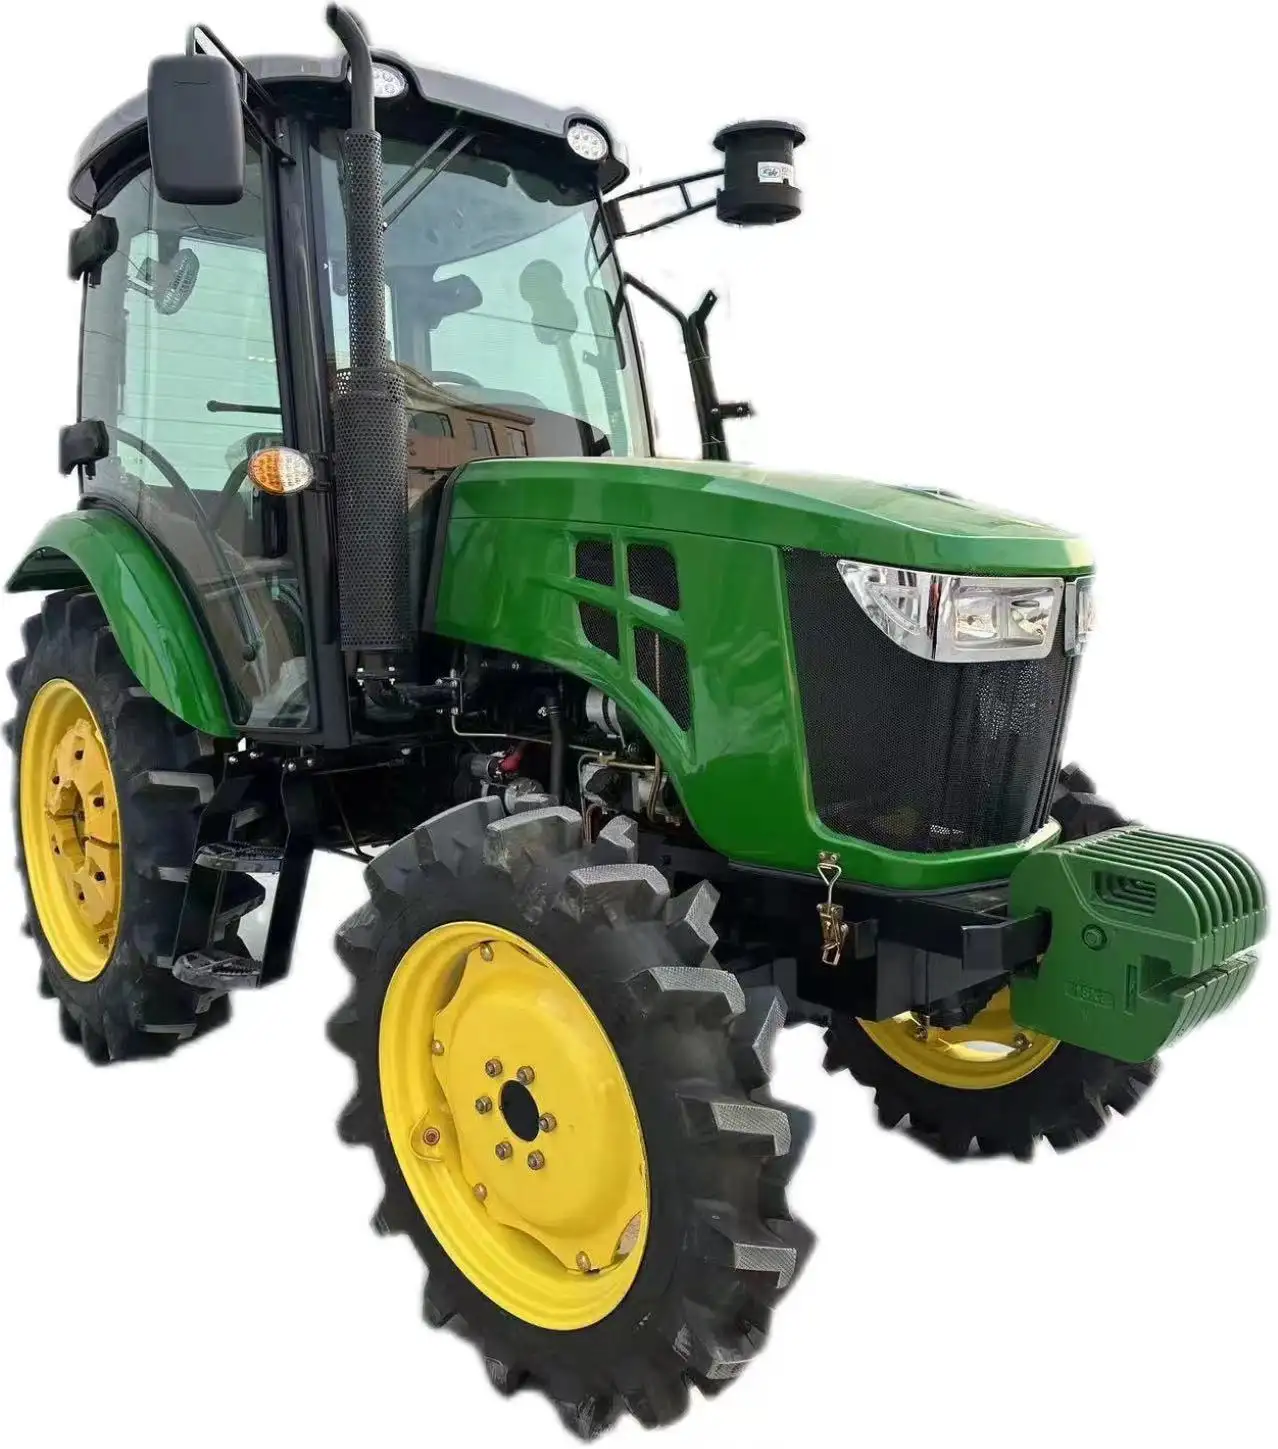 Vendita calda Lezi con caricatore frontale per attrezzatura agricola per aratura trattore agricolo